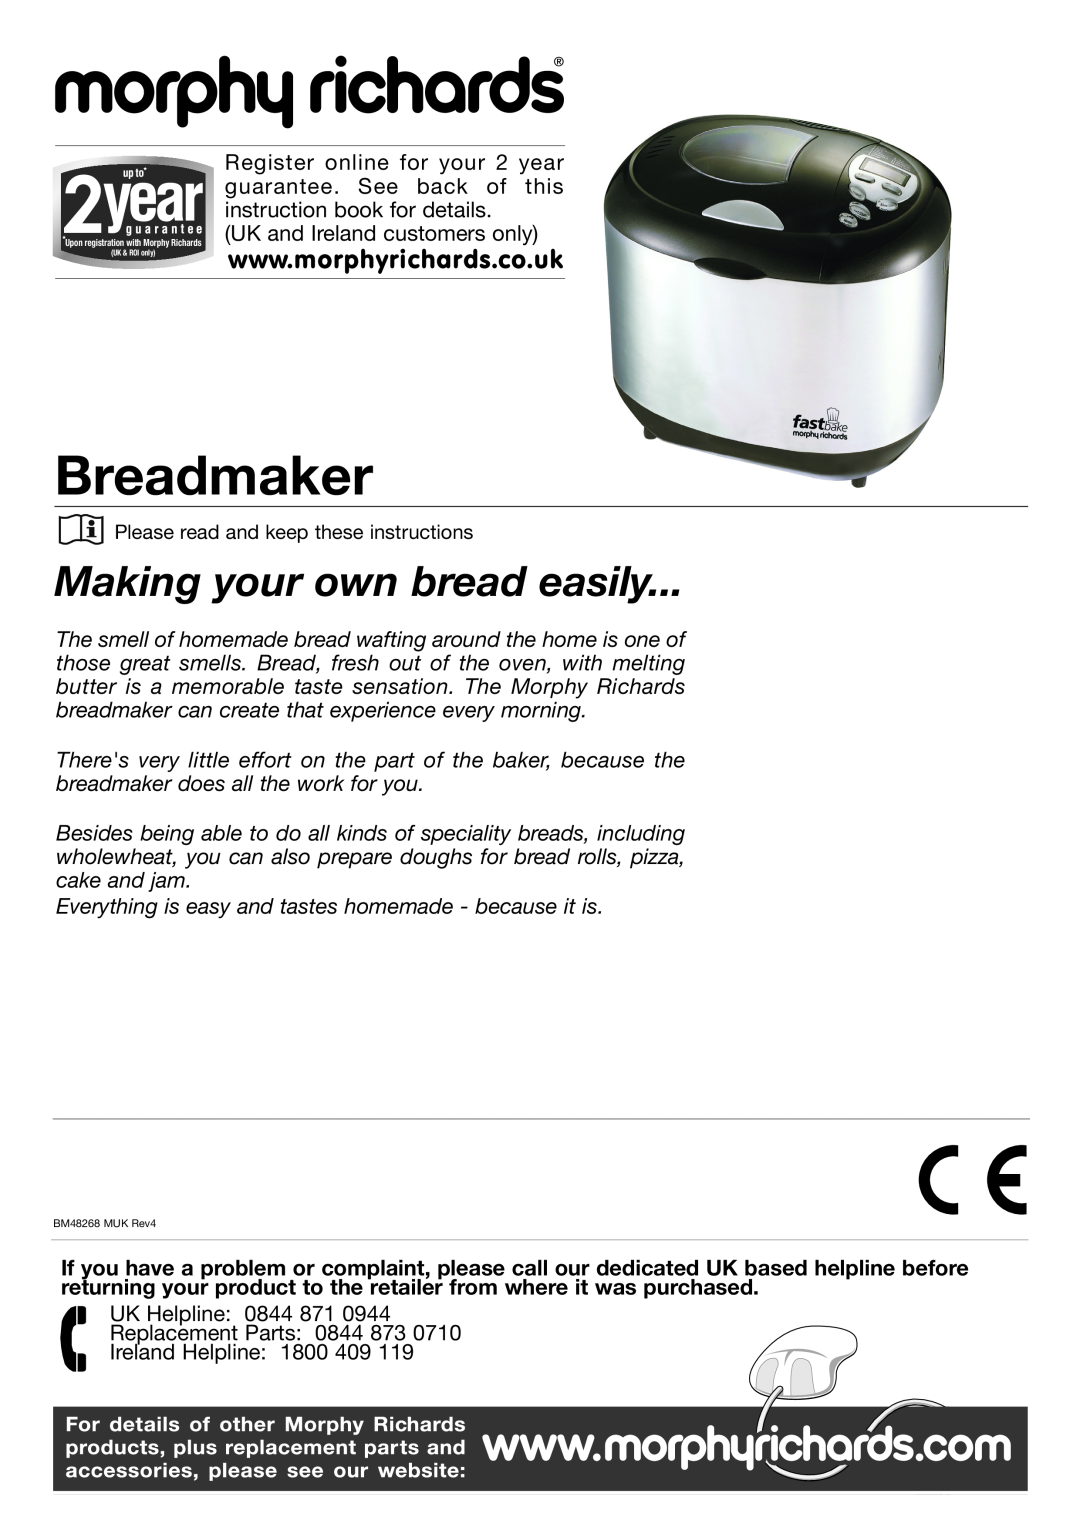 Morphy Richards BM48268 MUK Rev4 manual Breadmaker, Making your own bread easily 